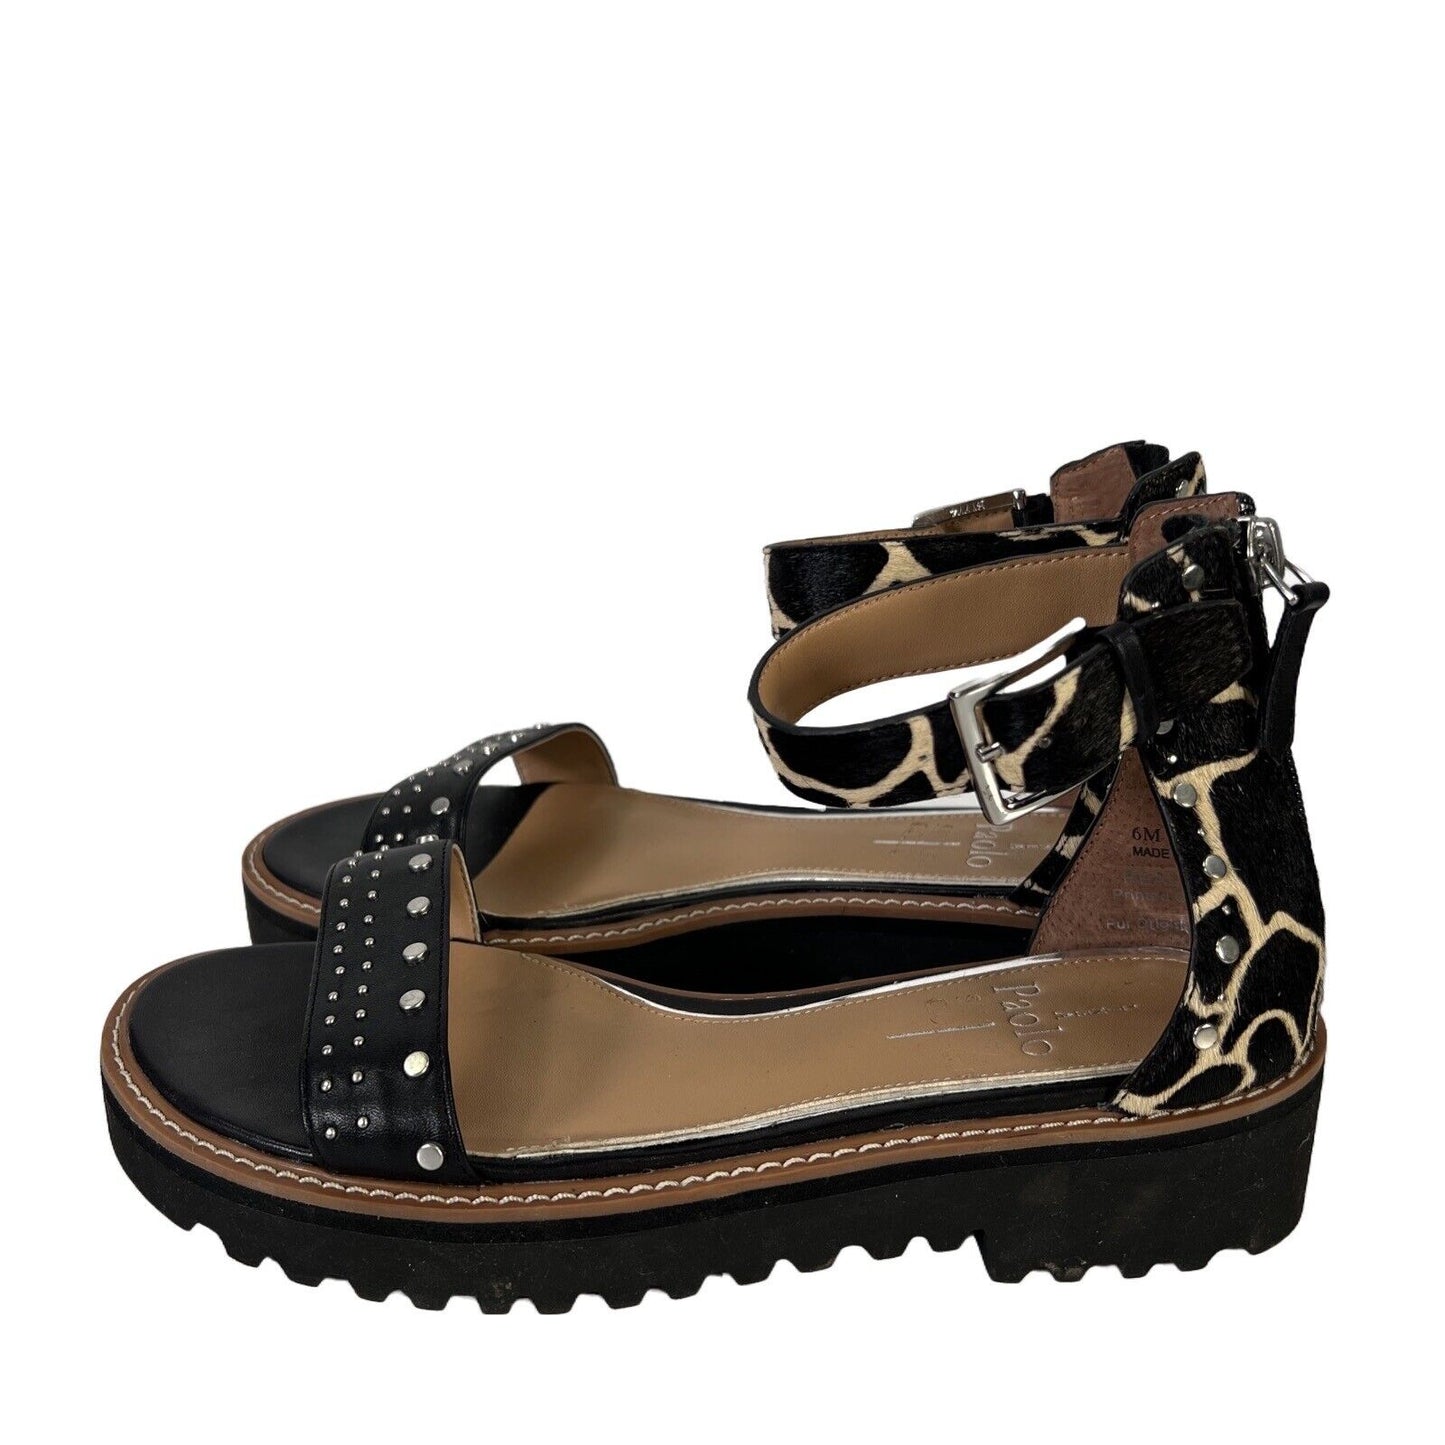 Linea Paolo Women's Black/Beige Ankle Strap Calf Hair Platform Sandals -6